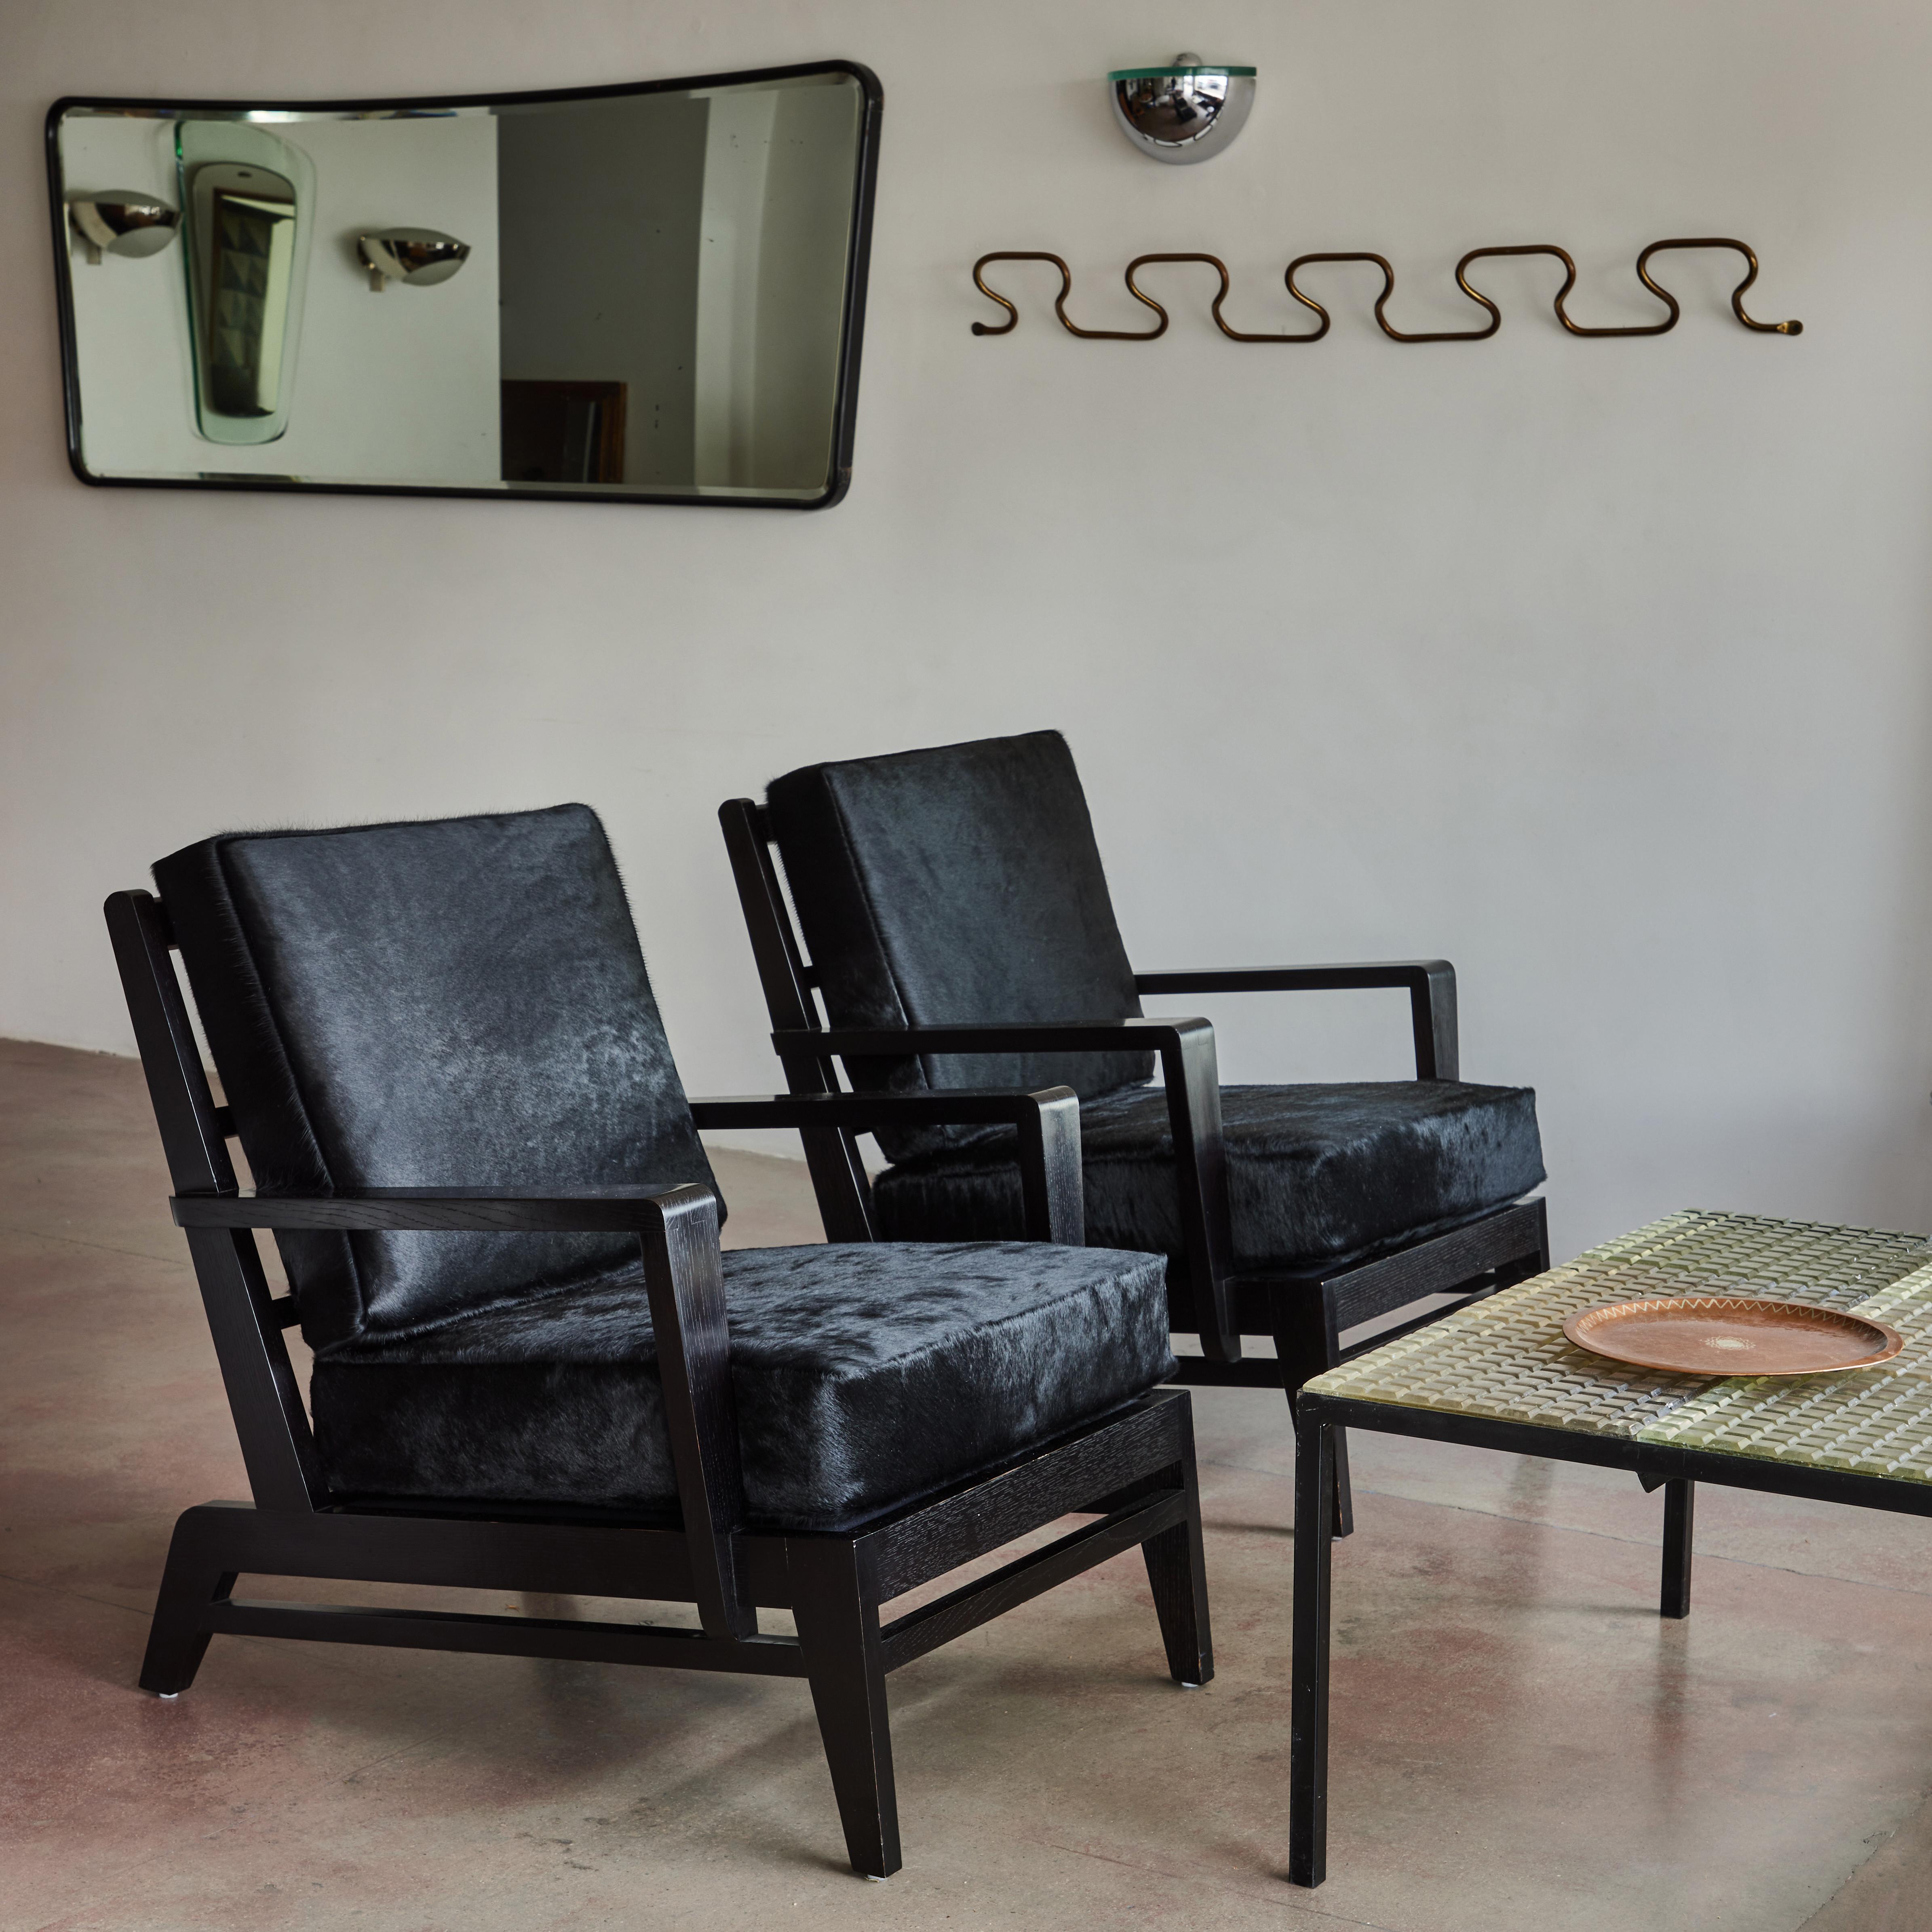 Paar Sessel aus ebonisierter Eiche von René Gabriel. Hergestellt in Frankreich in den 1950er Jahren.

Diese Stühle wurden mit schwarzem Rindsleder neu gepolstert.